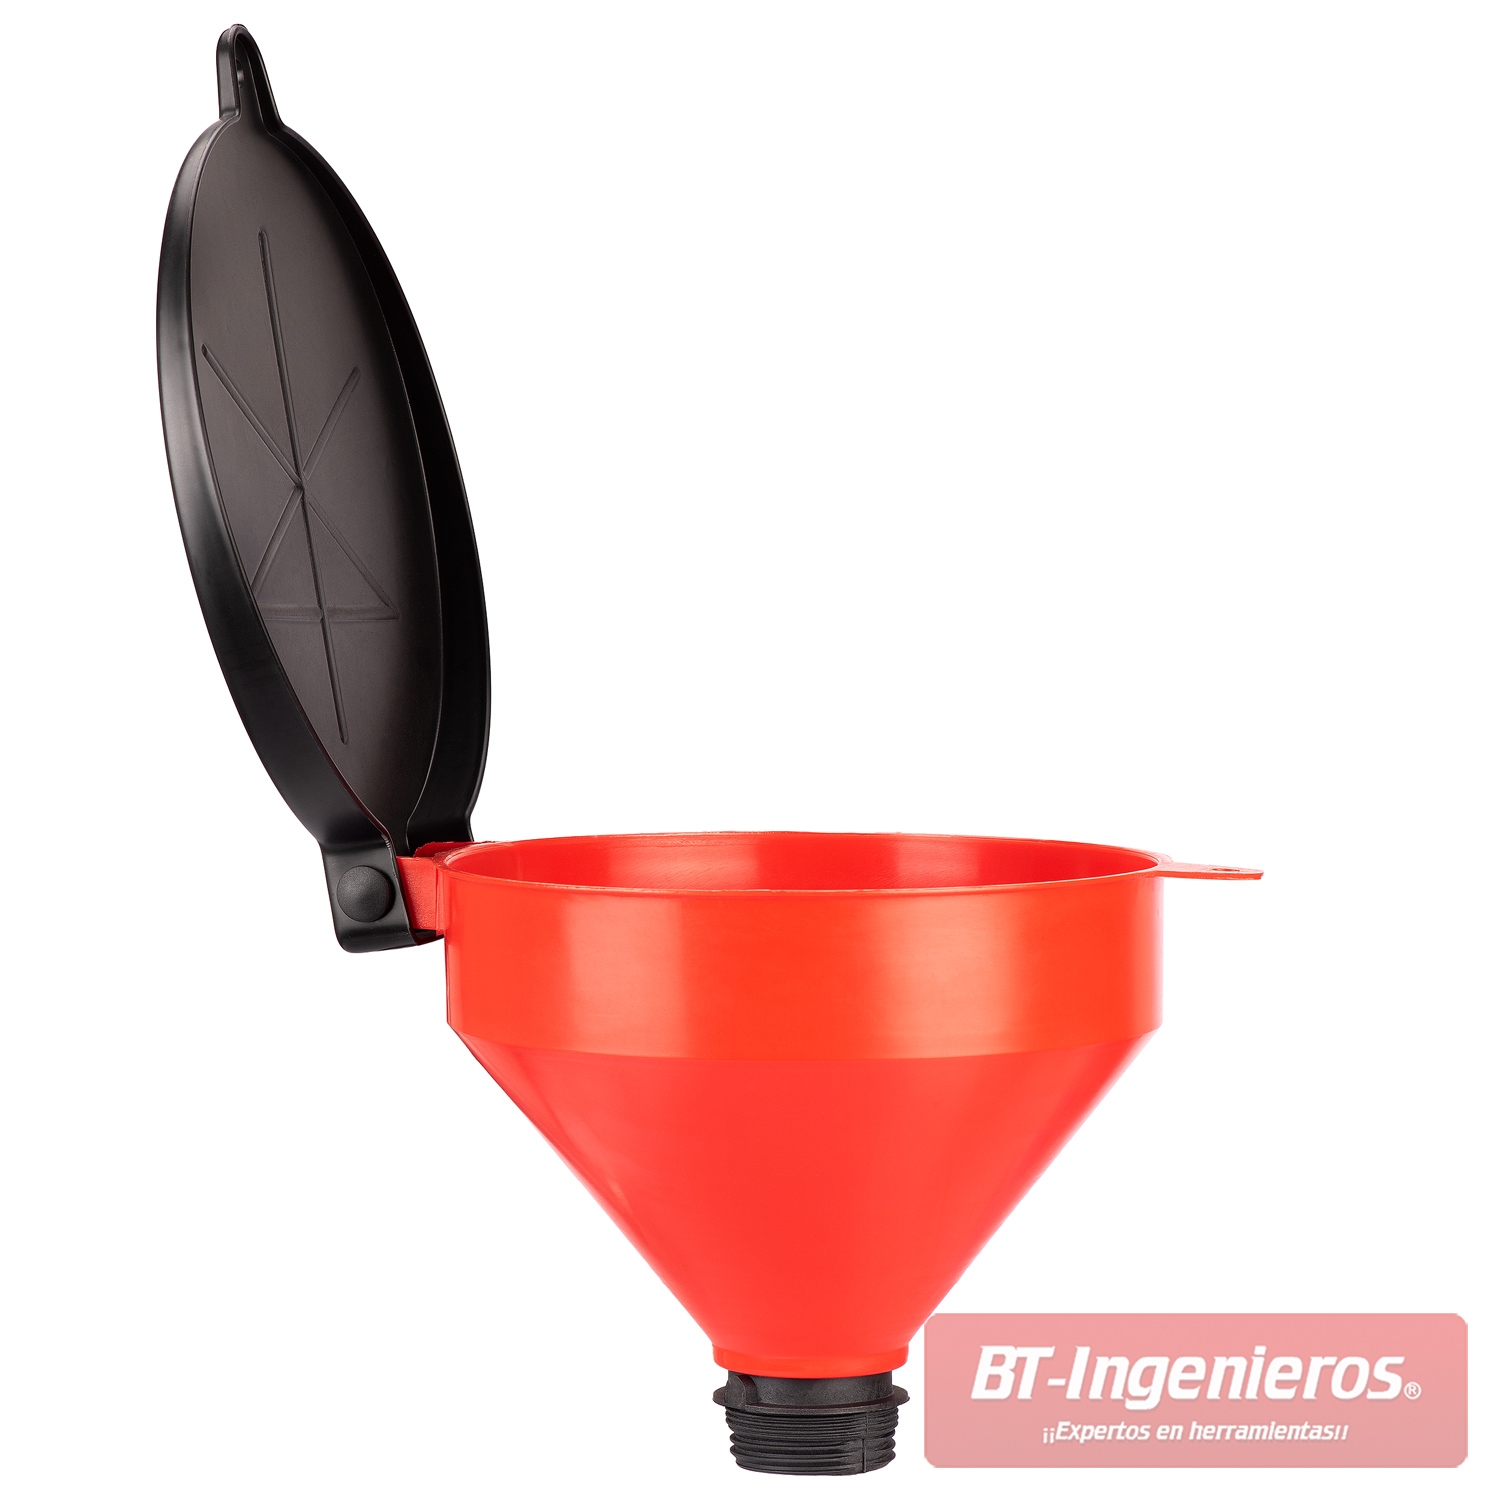 ▫ Embudo para barriles con rejilla para filtros de aceite ☑ Ø 250 mm.